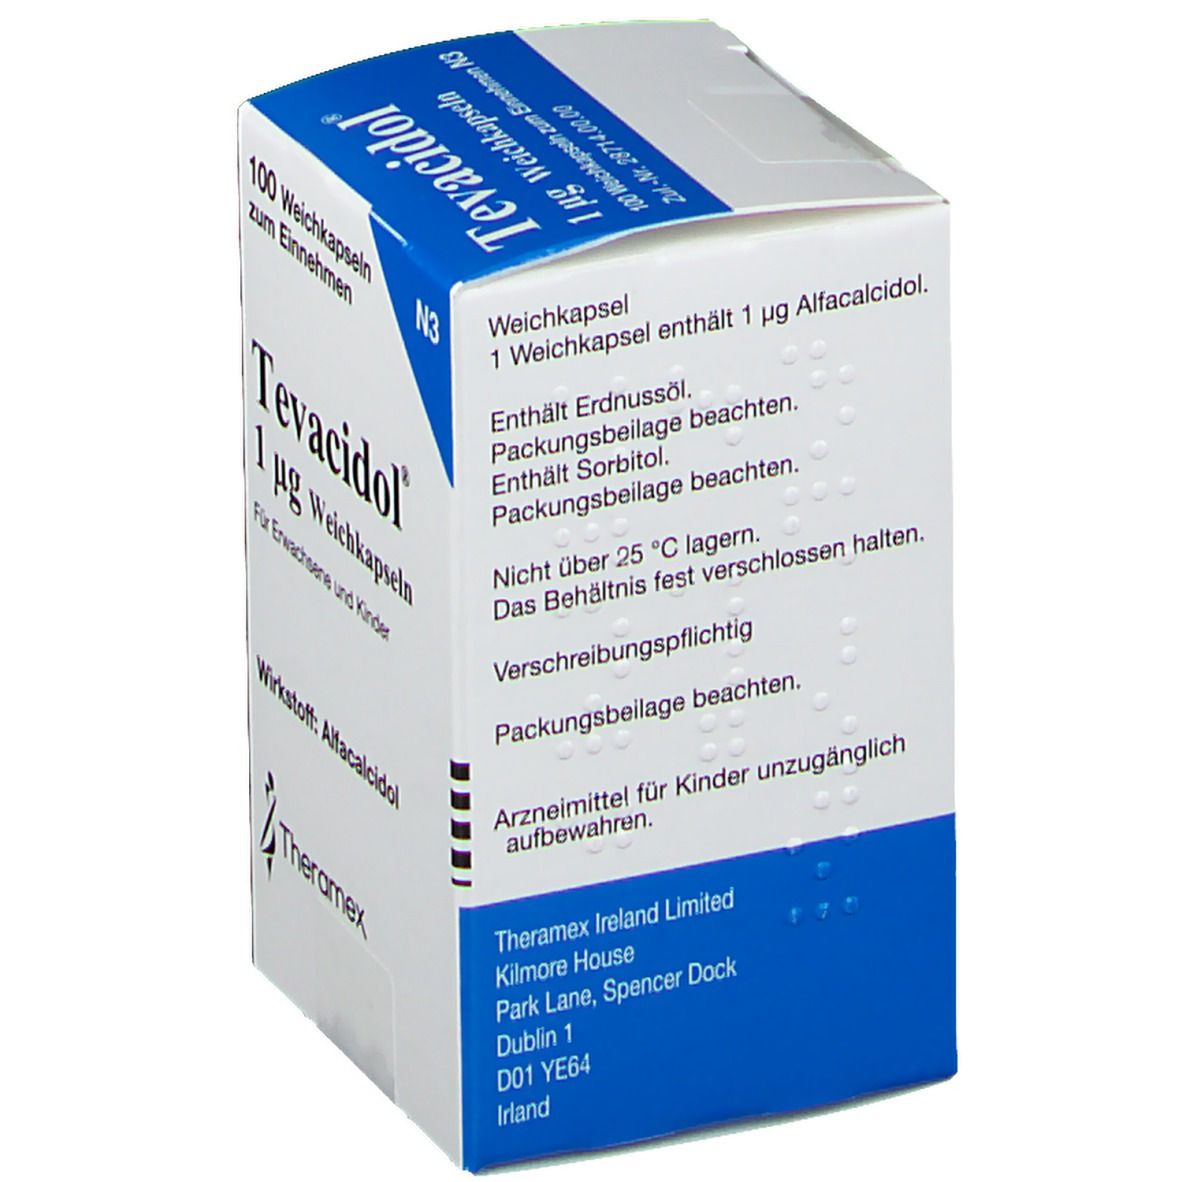 Tevacidol® 1 µg